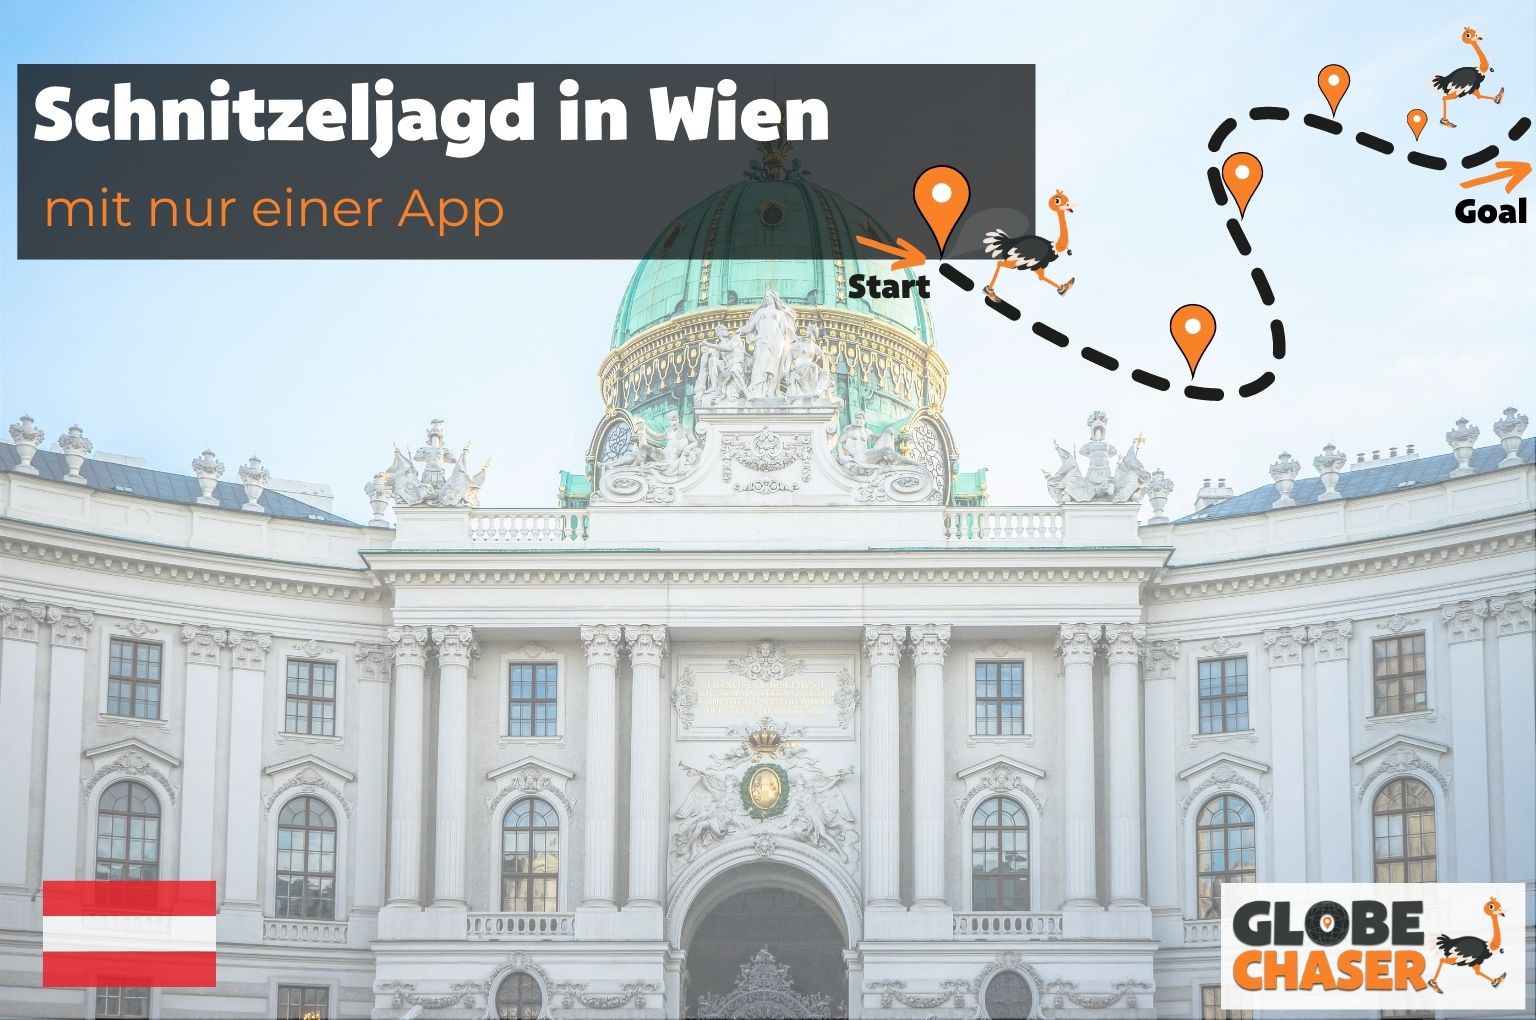 Schnitzeljagd in Wien mit App - Globe Chaser Erlebnisse Austria